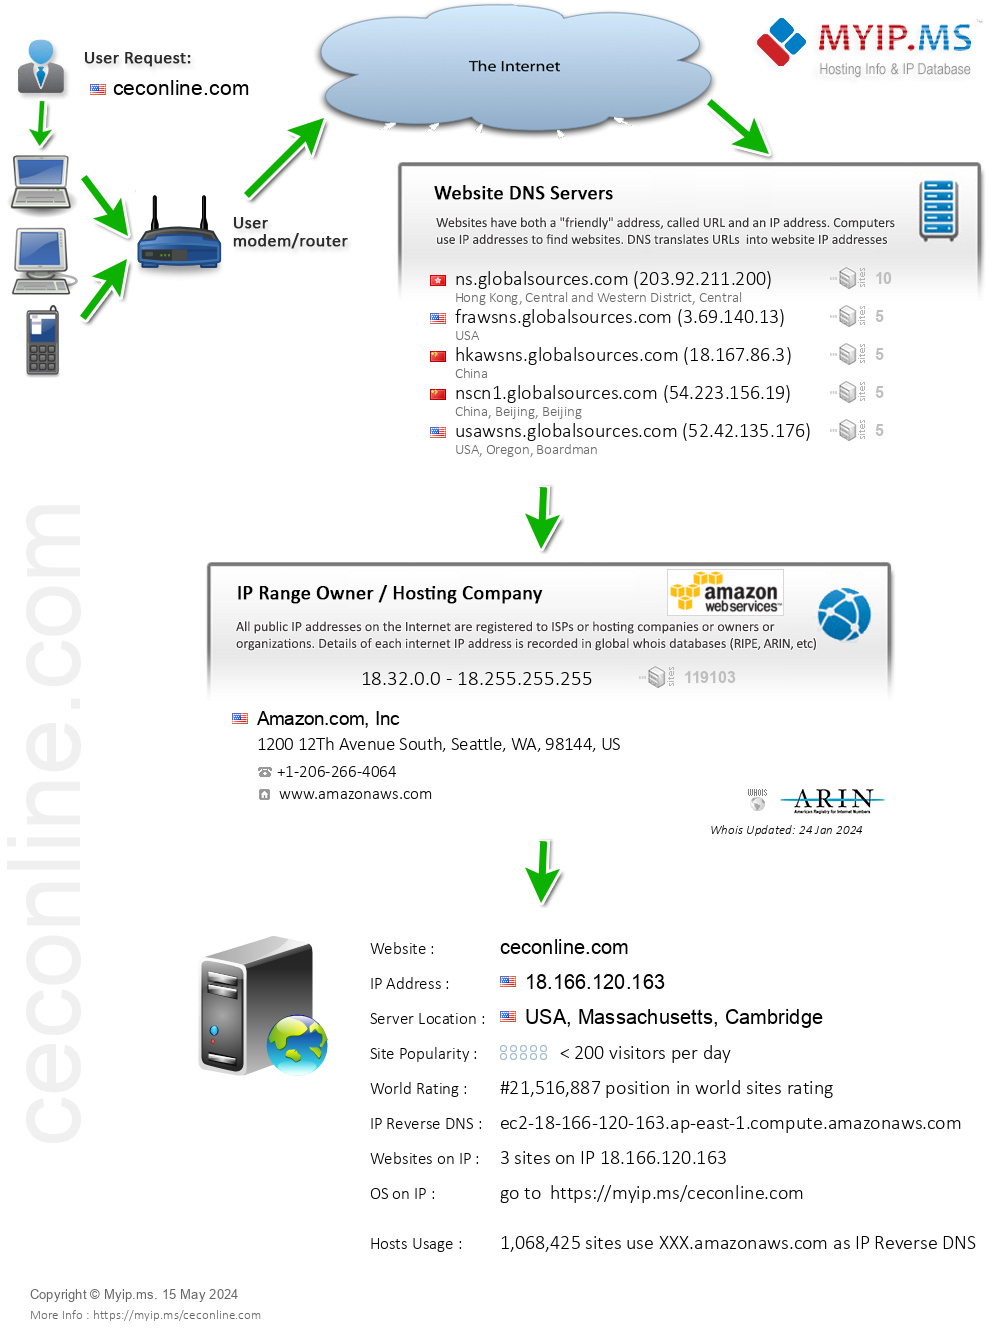 Ceconline.com - Website Hosting Visual IP Diagram